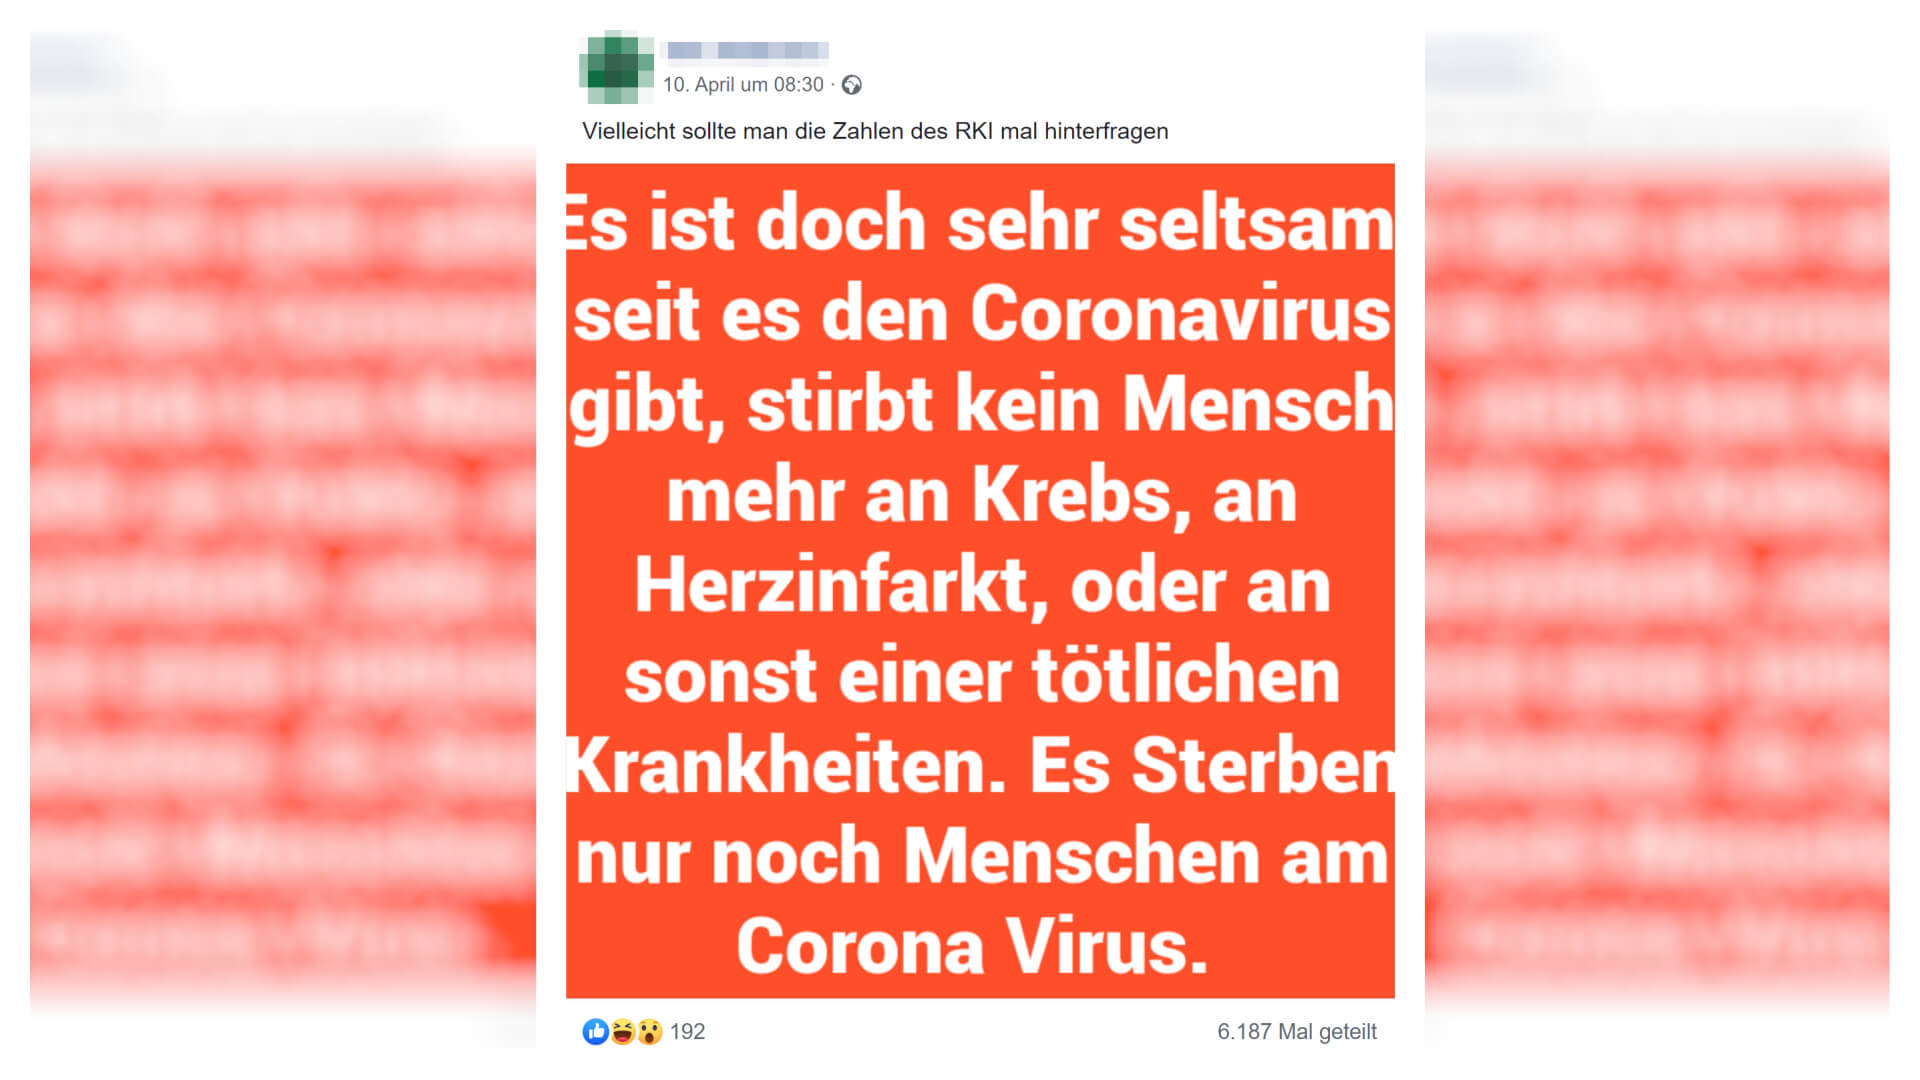 Dieser Facebook-Beitrag stellt eine Behauptung über die Todesursachen in Deutschland auf.